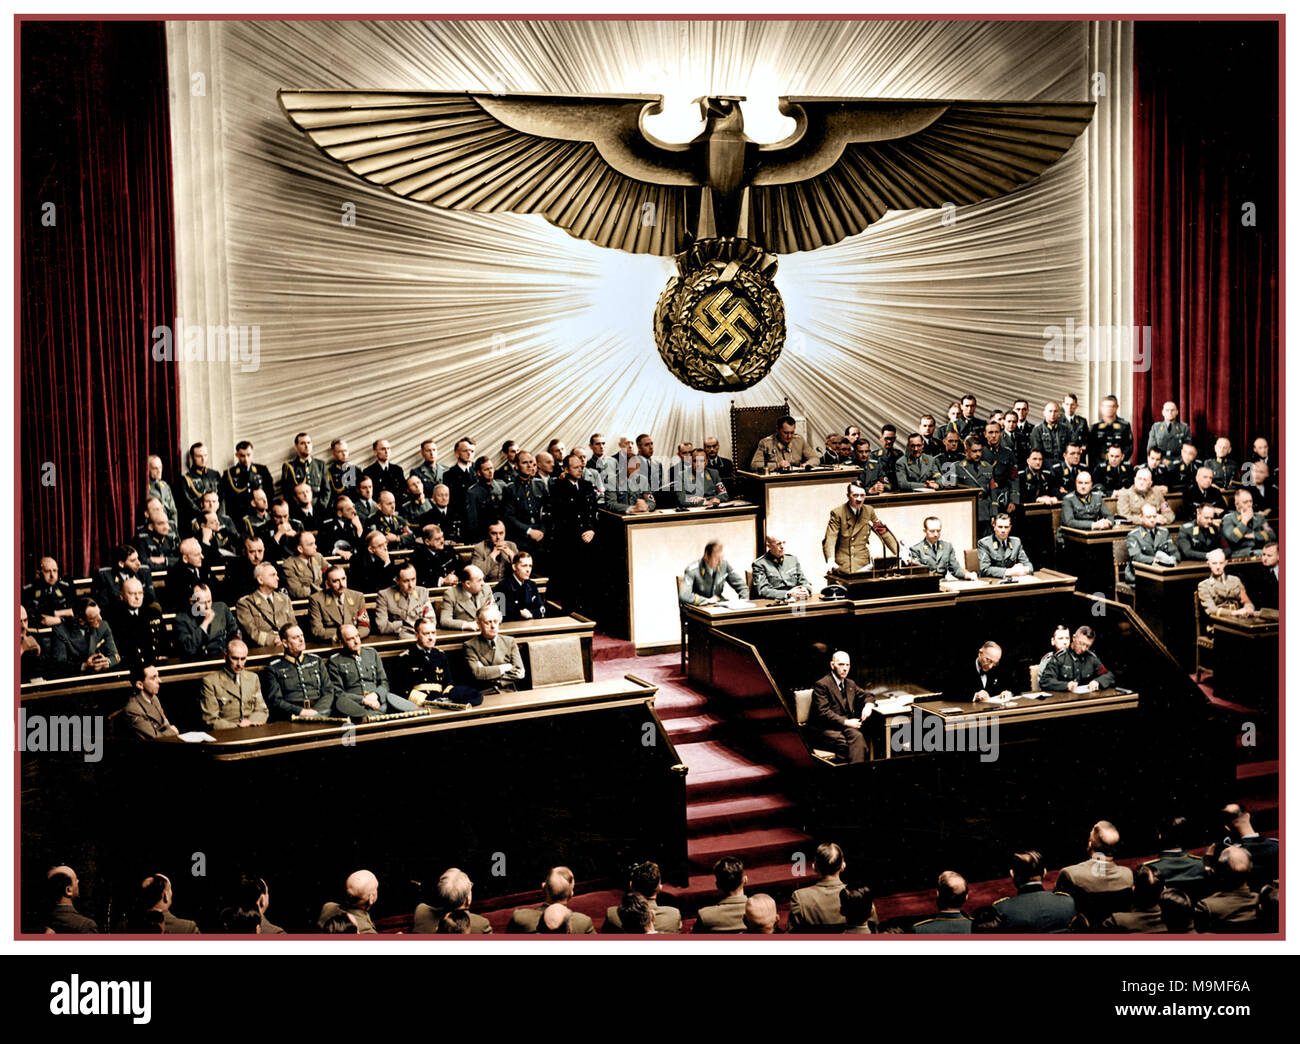 Der 1940er Jahrgang 2.Weltkrieg Adolf Hitler eine Rede bei der Kroll Opera House zu den Männern von der Reichstag zu den Themen von Roosevelt und der Krieg im Pazifik, den Krieg zu erklären die Vereinigten Staaten. Berlin 1941 Stockfoto